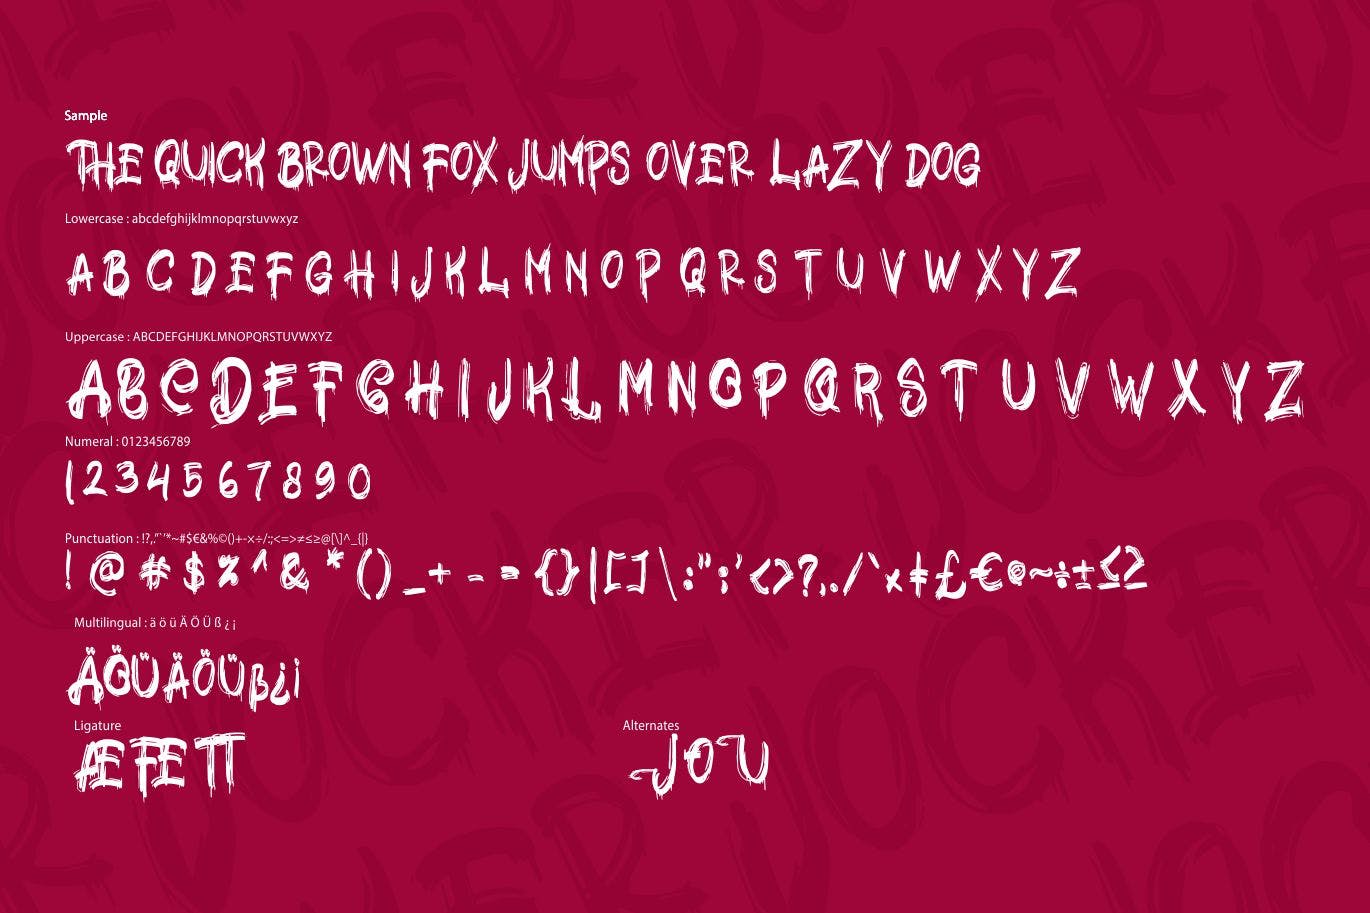 极具个性的英文笔刷装饰字体非凡图库精选 Jocker | Psychotype Font Theme插图(5)